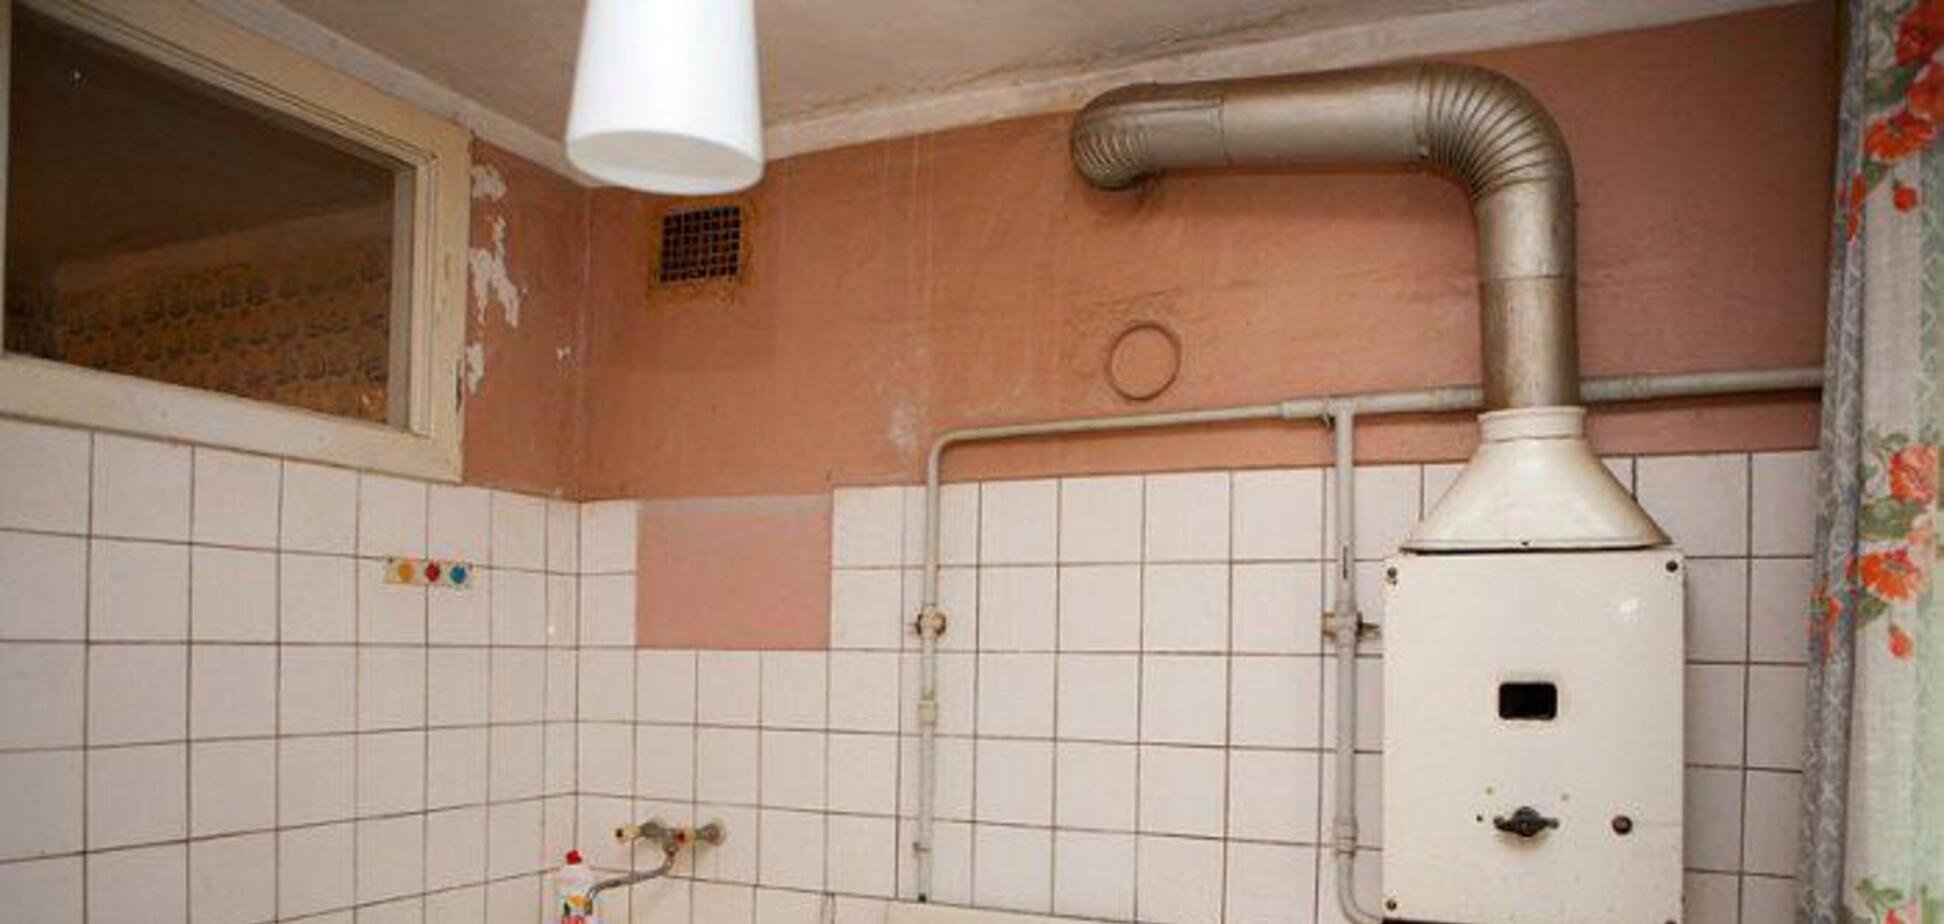 Правила установки газовой колонки в квартире пятиэтажного дома на кухне